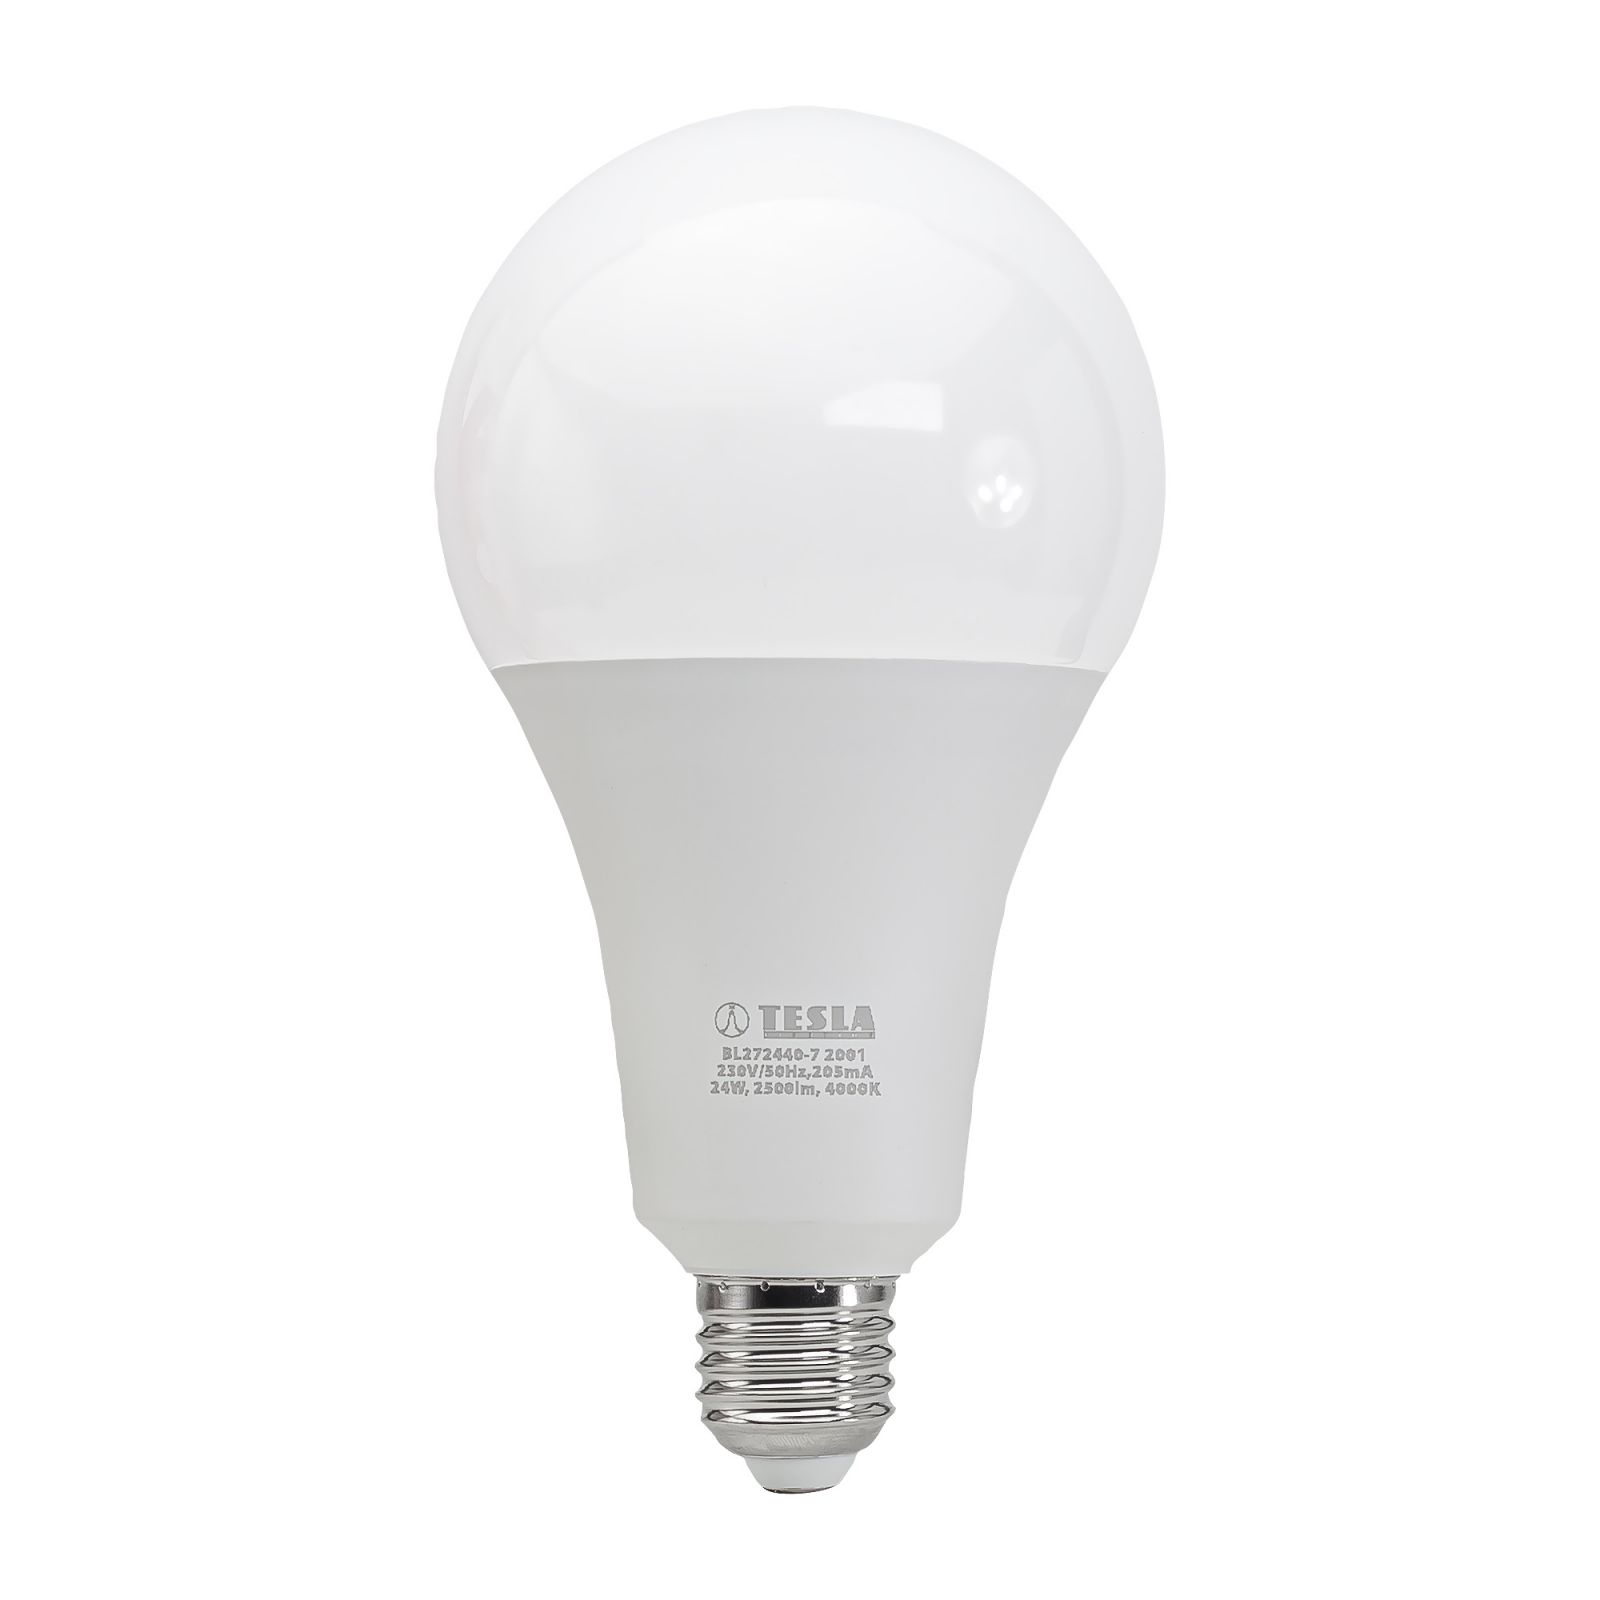 Tesla - LED žárovka BULB E27, 24W, 230V, 2500lm, 25 000h, 4000K denní bílá 220st Tesla Lighting